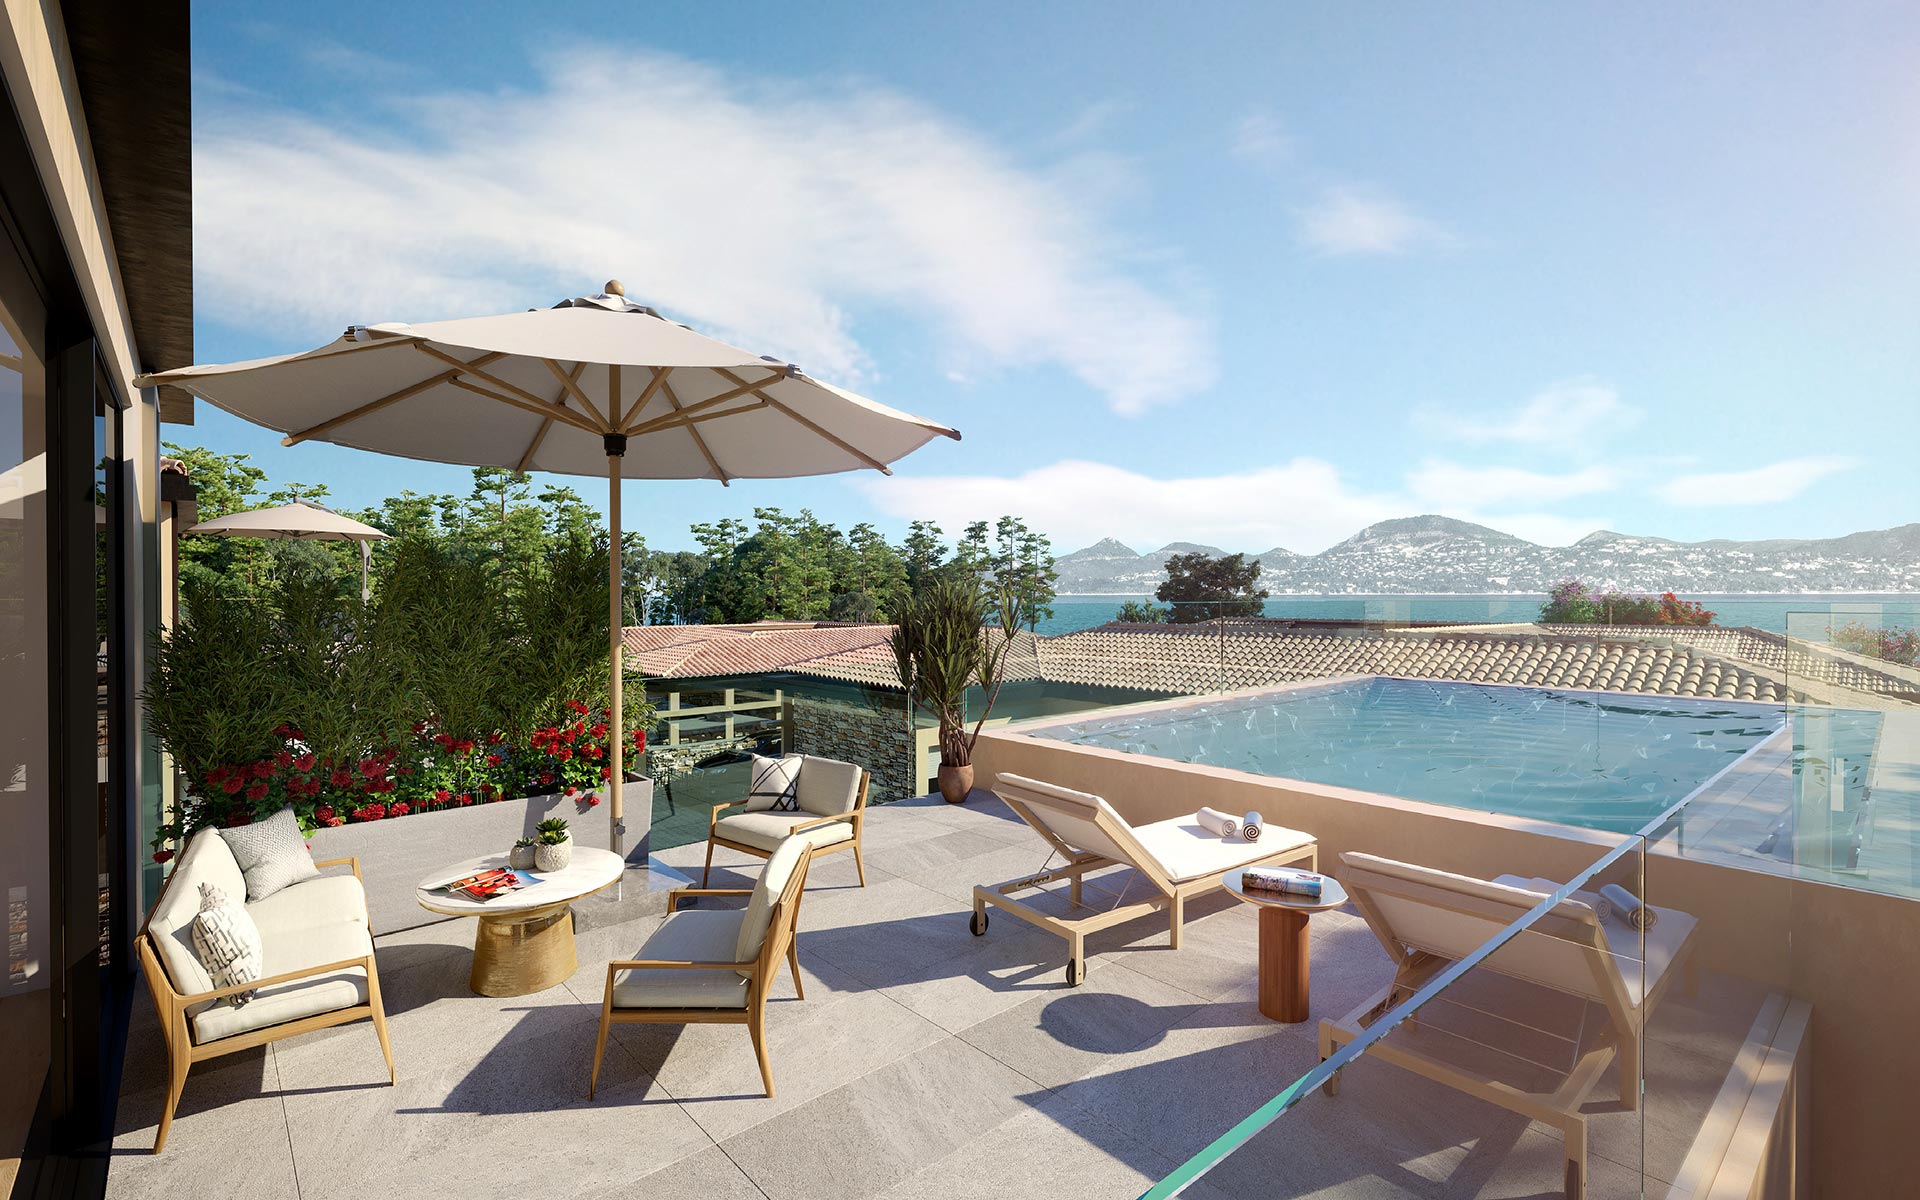 Rendu 3D d'une terrasse de villa avec piscine pour une promotion immobilière